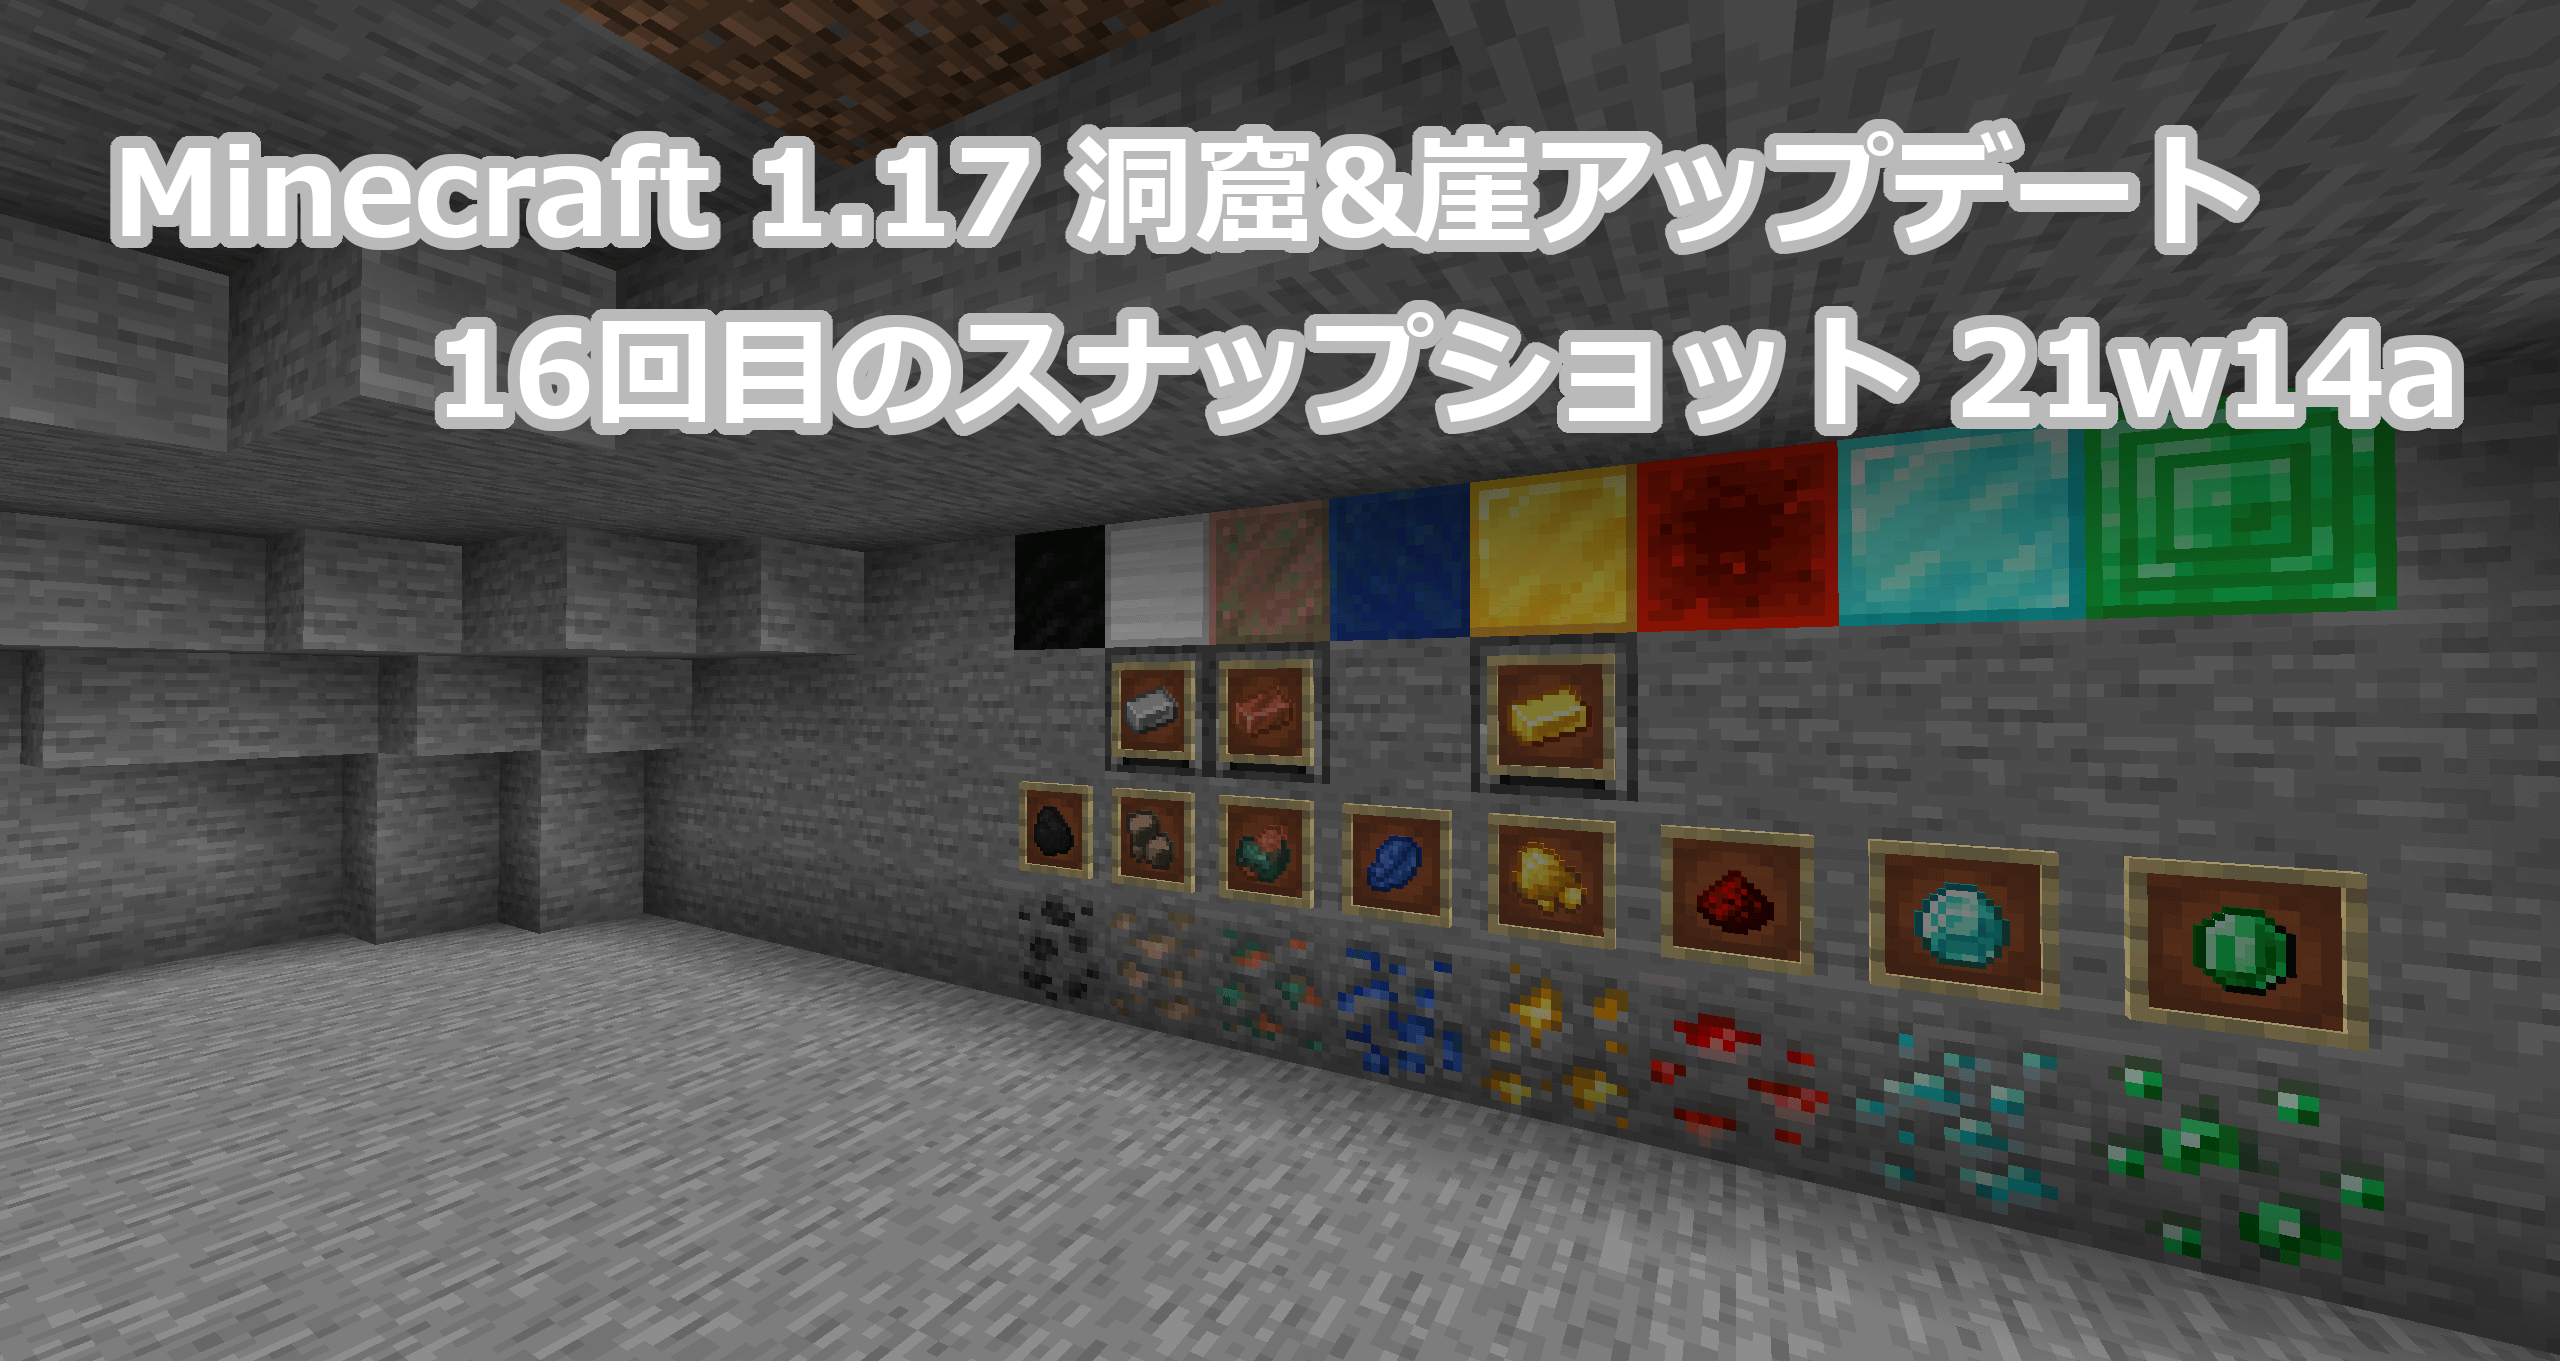 Minecraft 1 17 16回目のスナップショット21w14aリリース情報 鉱石の原石追加で鉱石の入手ルートを統一 まいんくらふと みっくすじゅーす